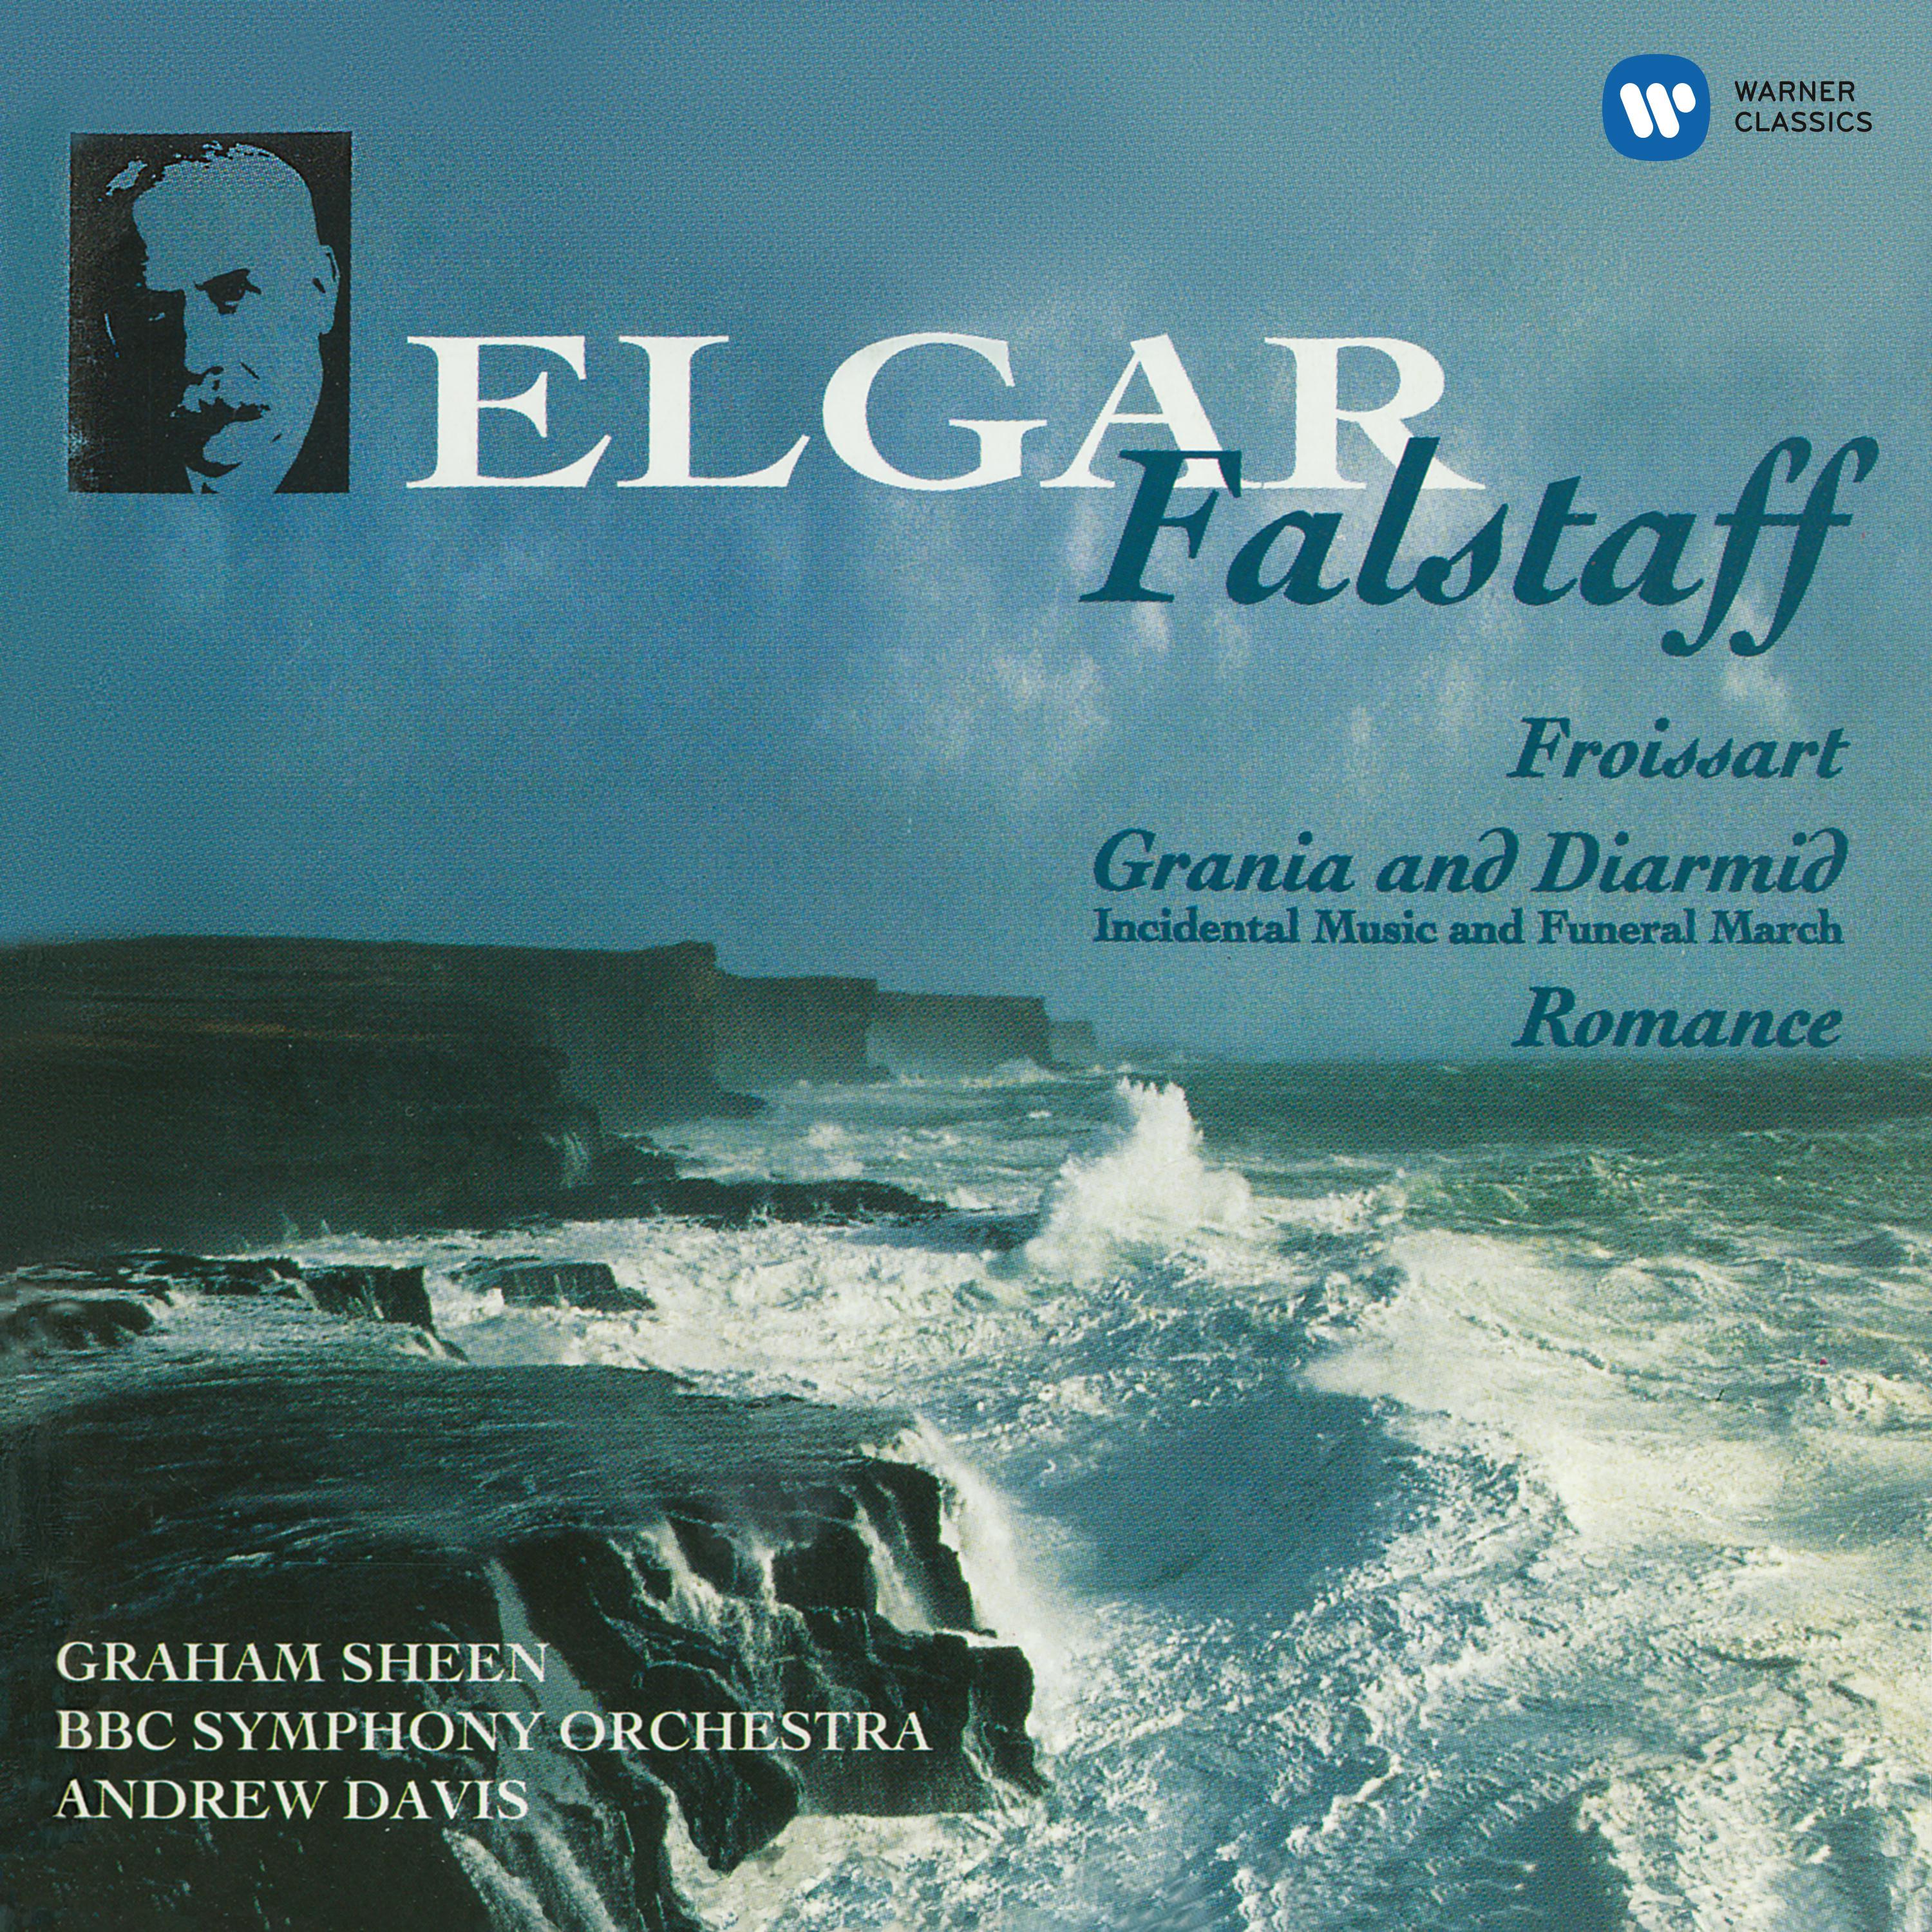 Elgar: Falstaff & Orchestral Works